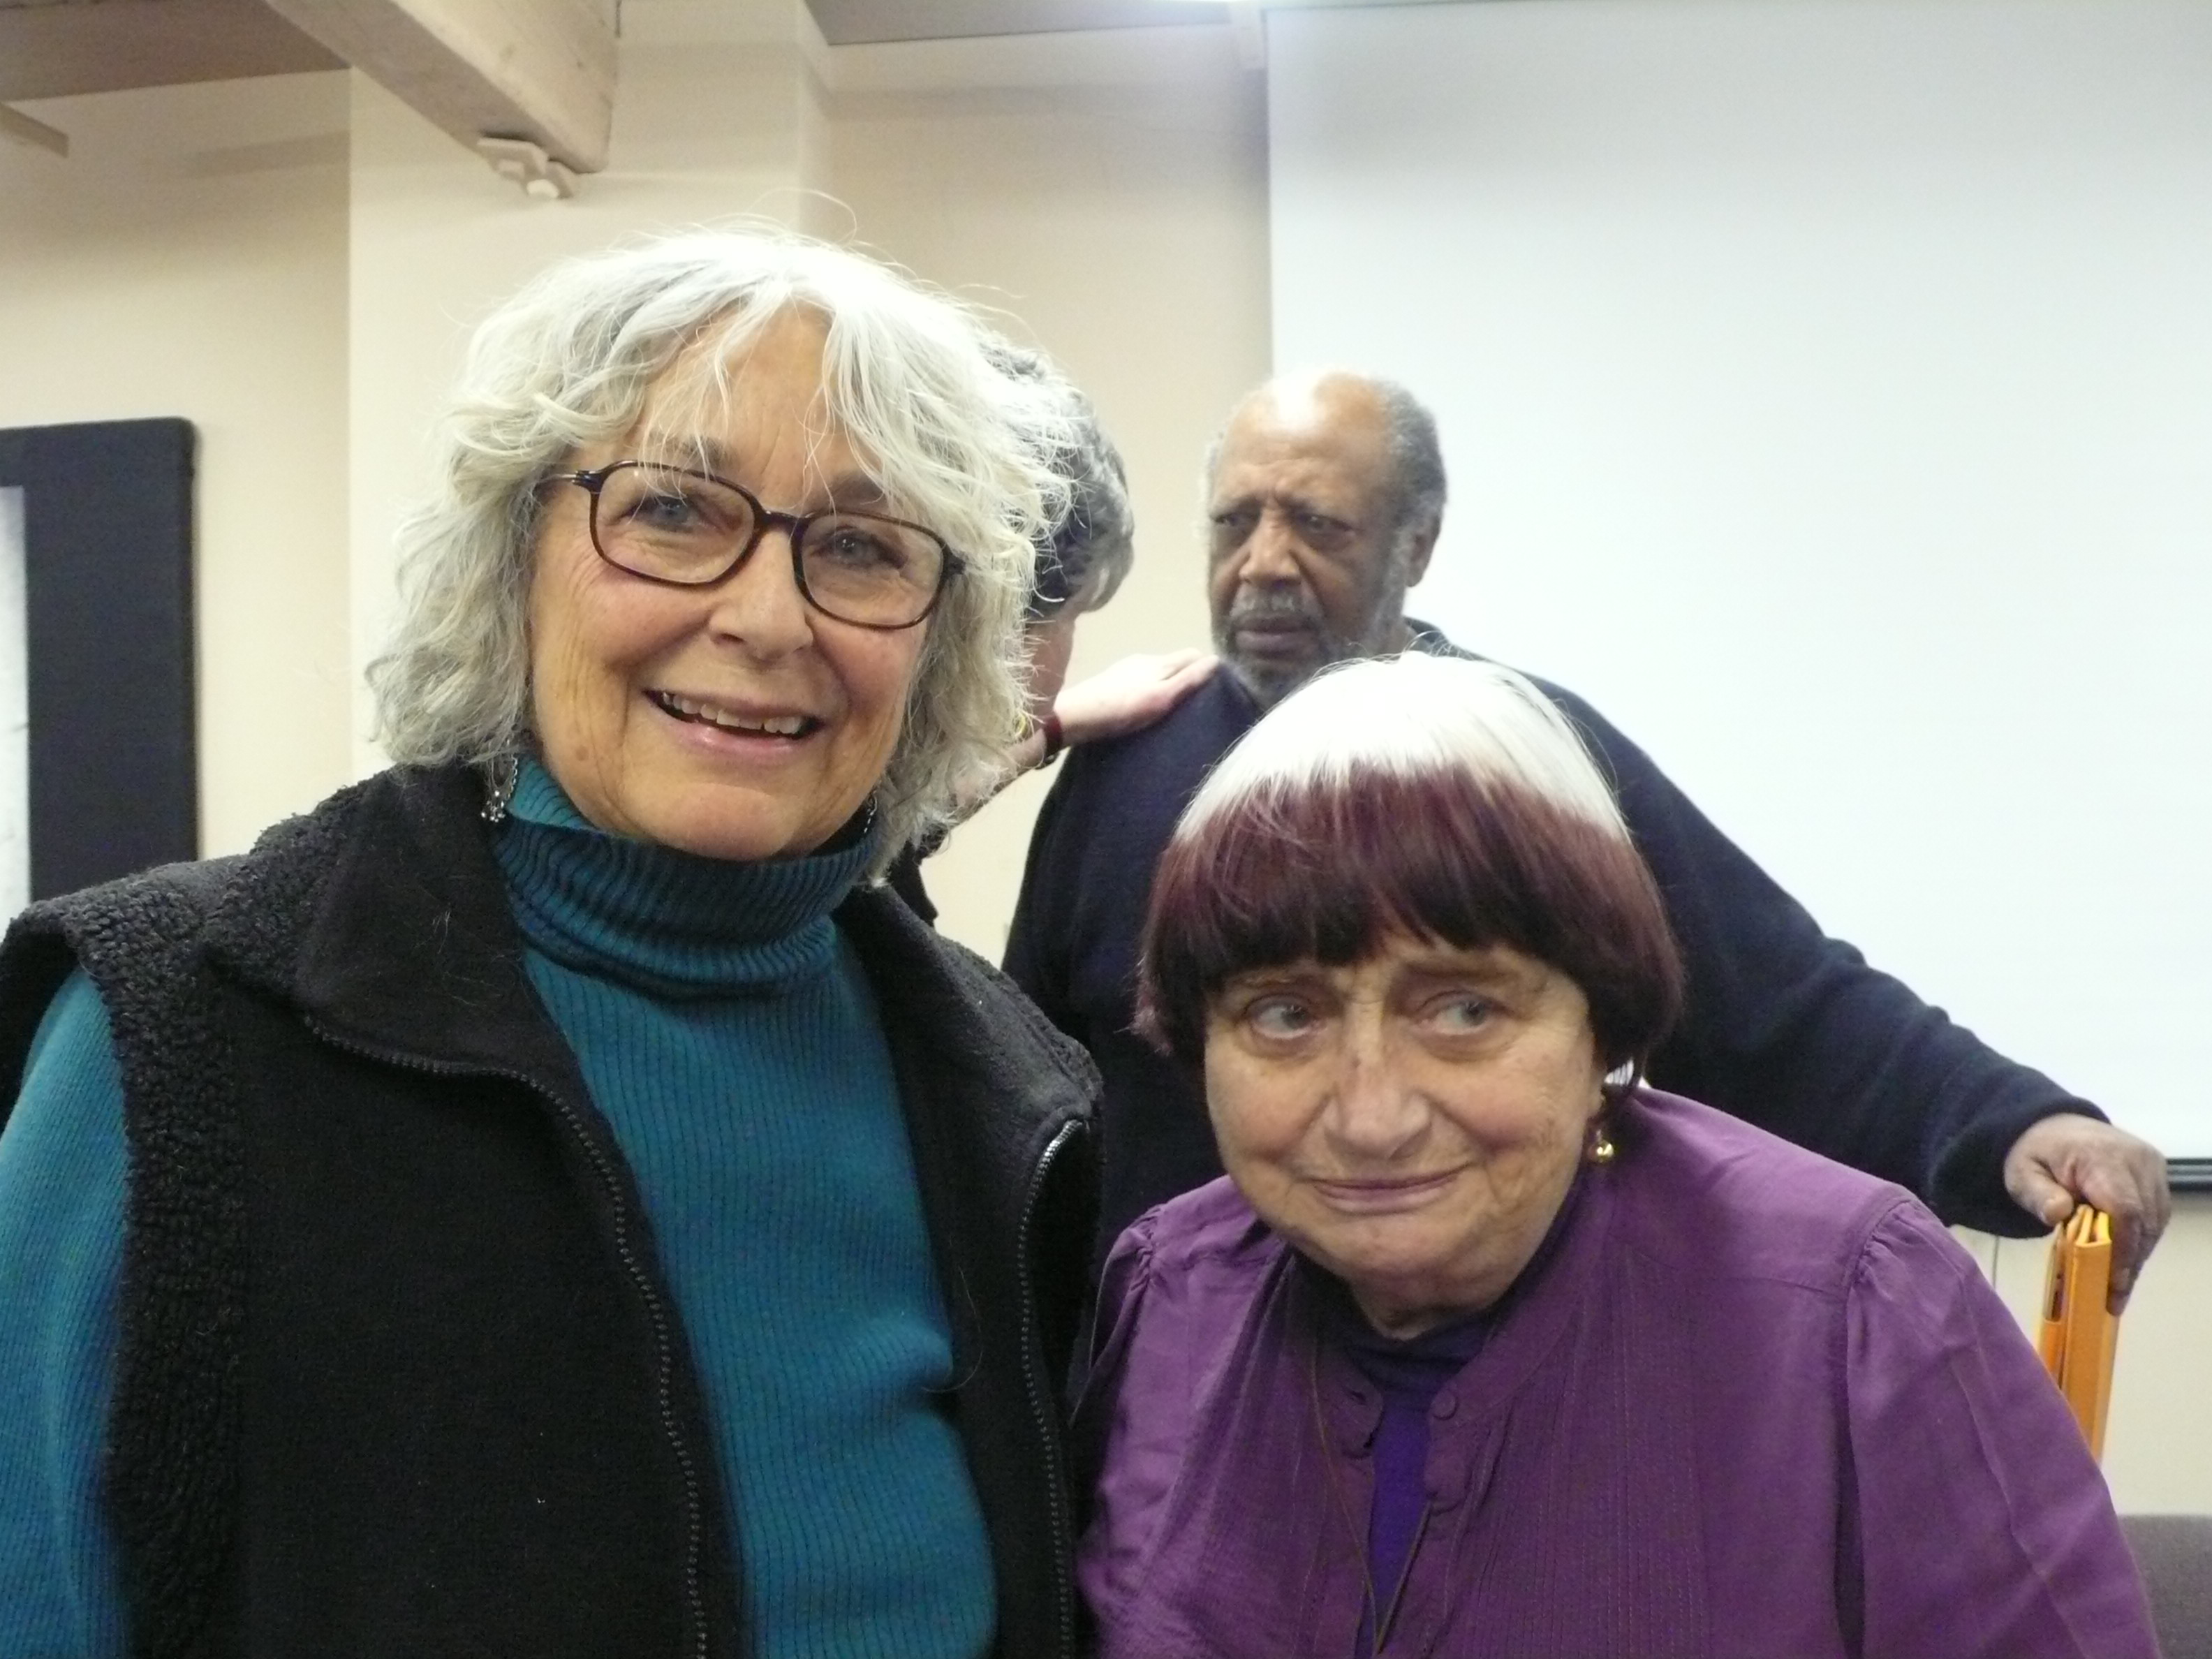 Lynn with Agnes Varda, 2013